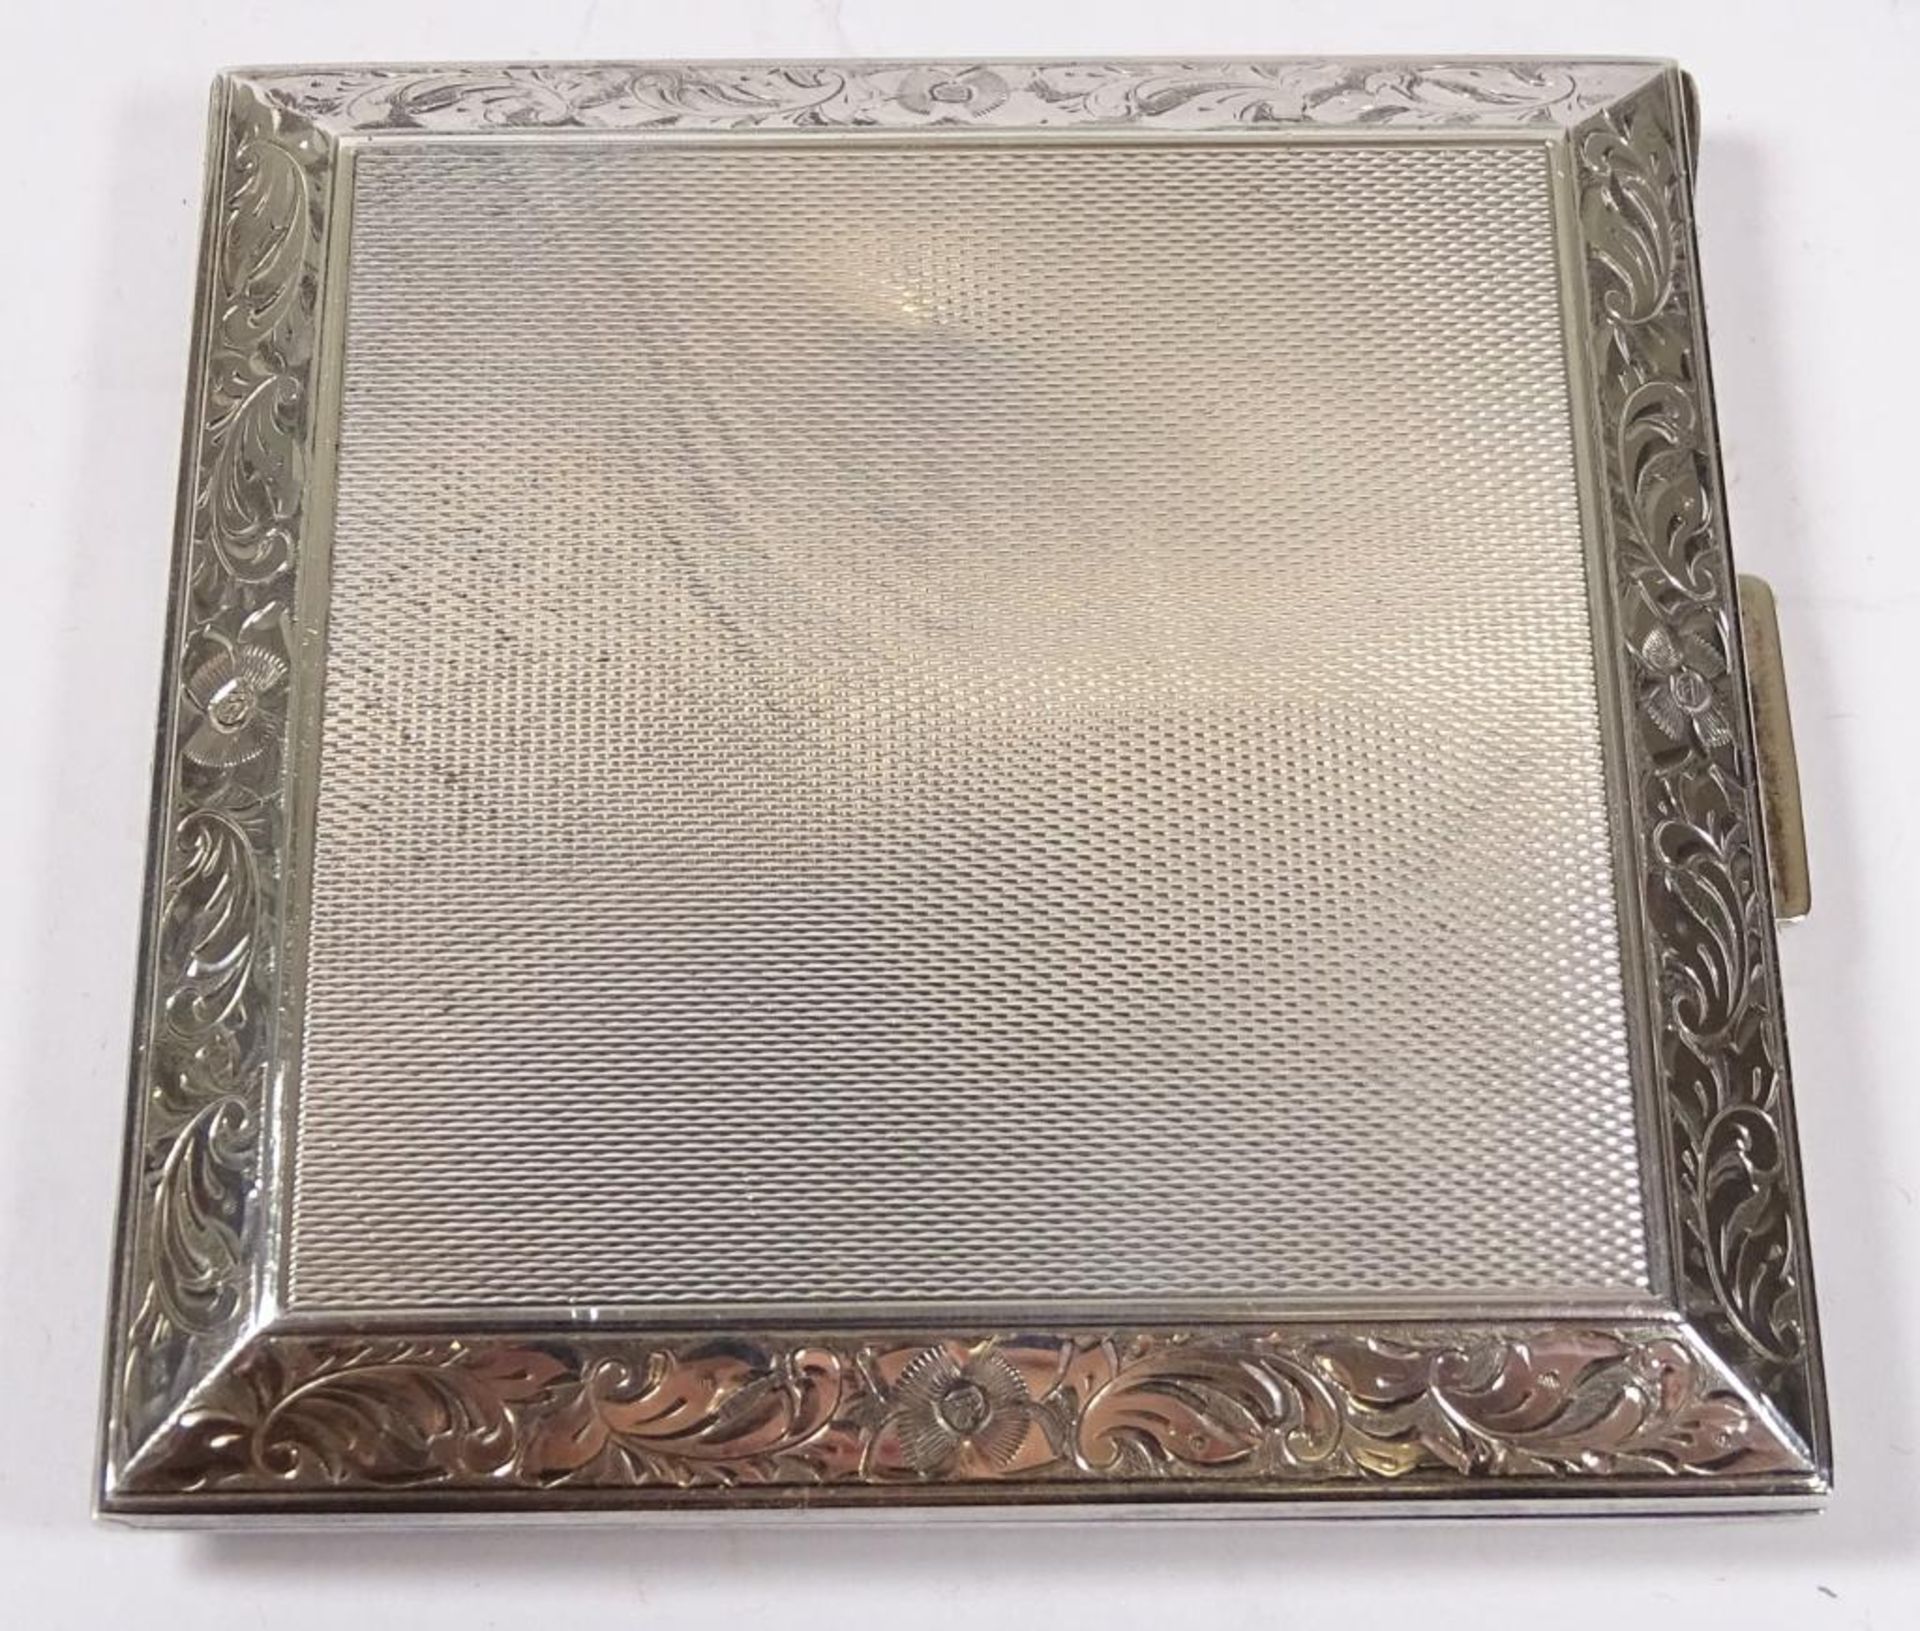 Puderdose mit Spiegel,Silber -925-,69x69mm,zwei Dellen - Bild 3 aus 4